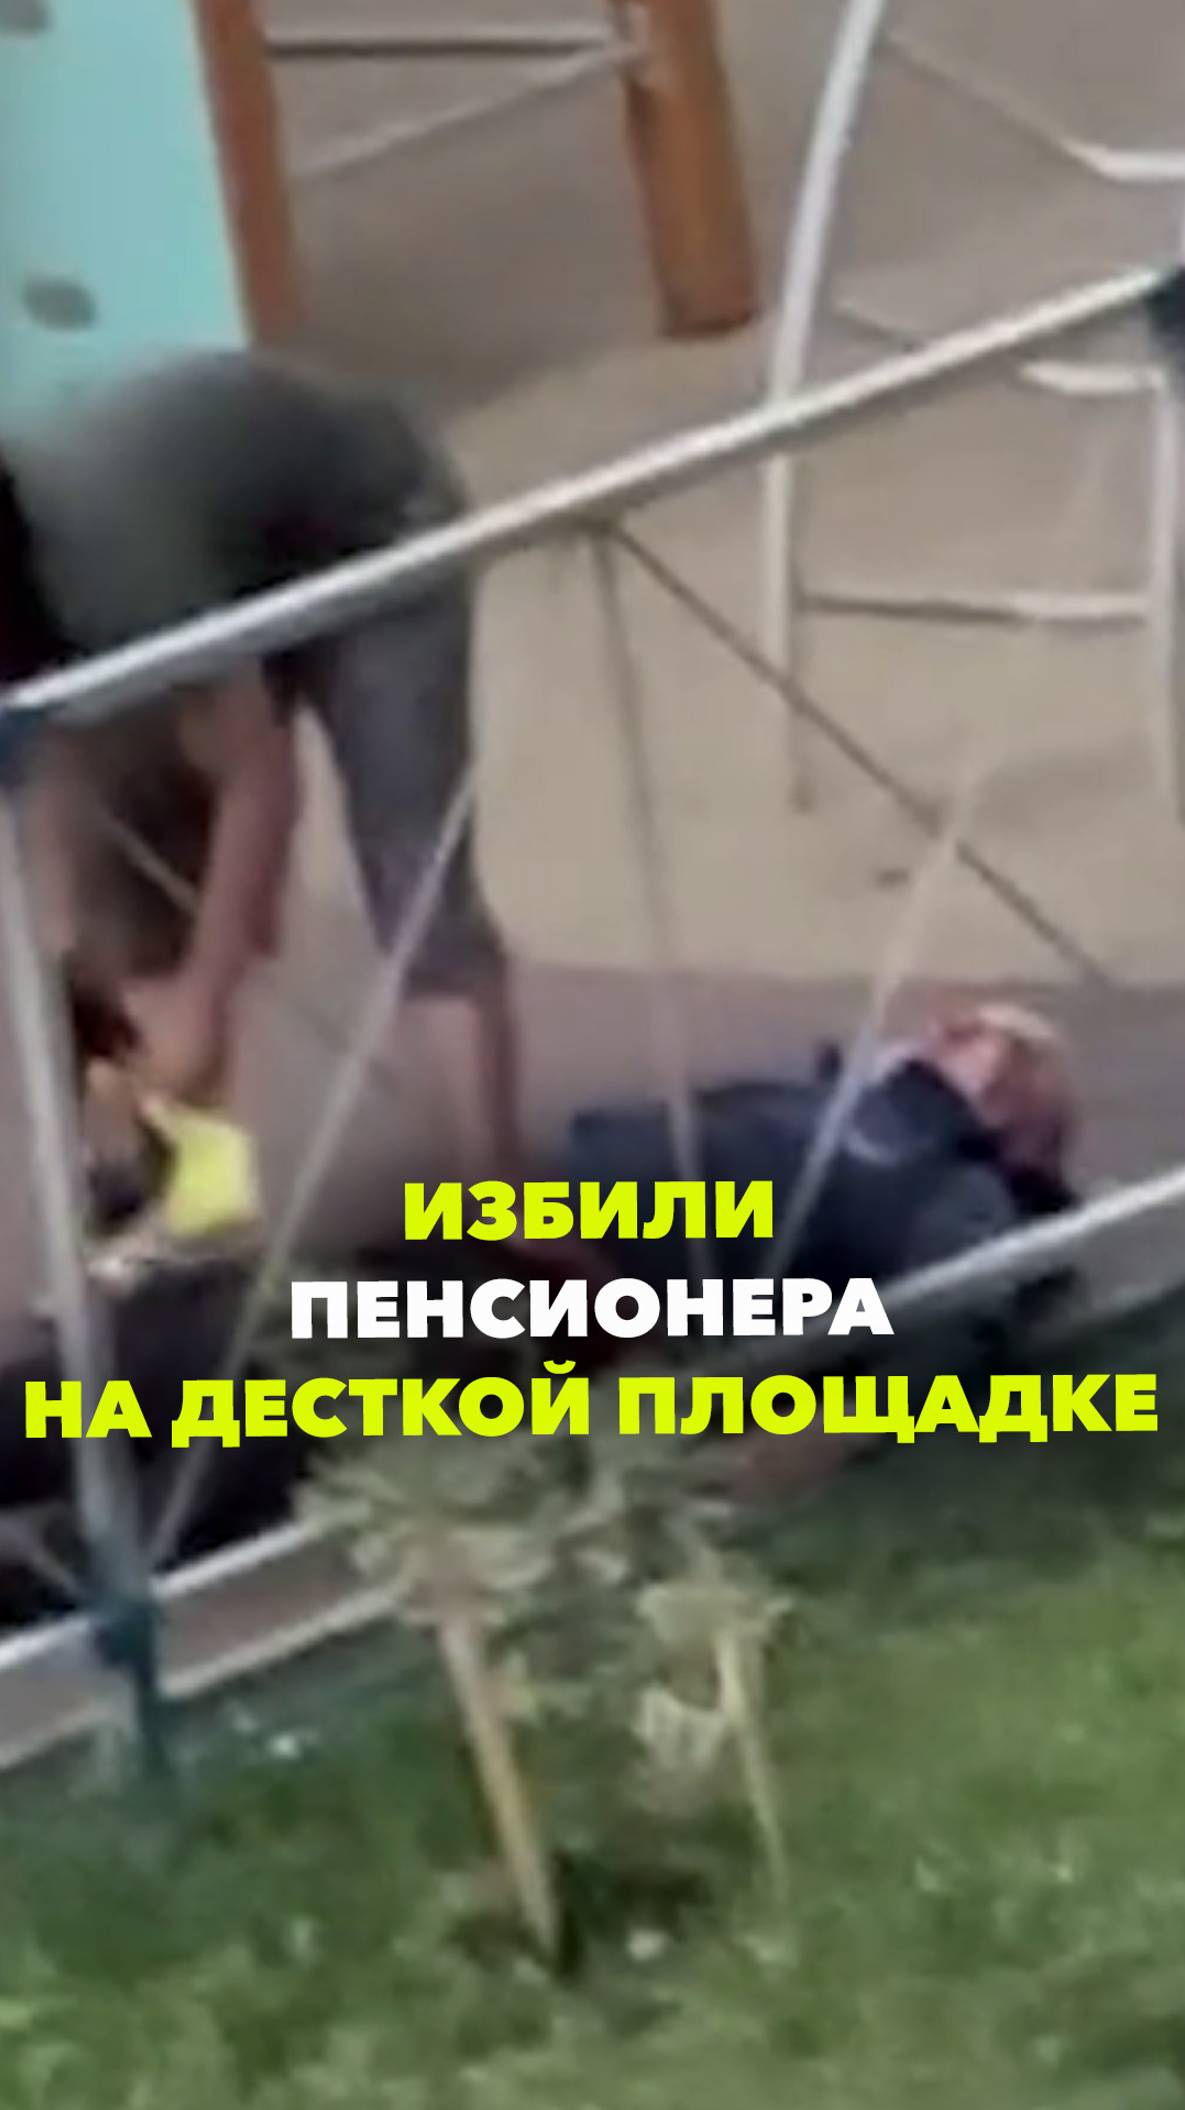 Пенсионера избили на детской площадке в Ульяновске